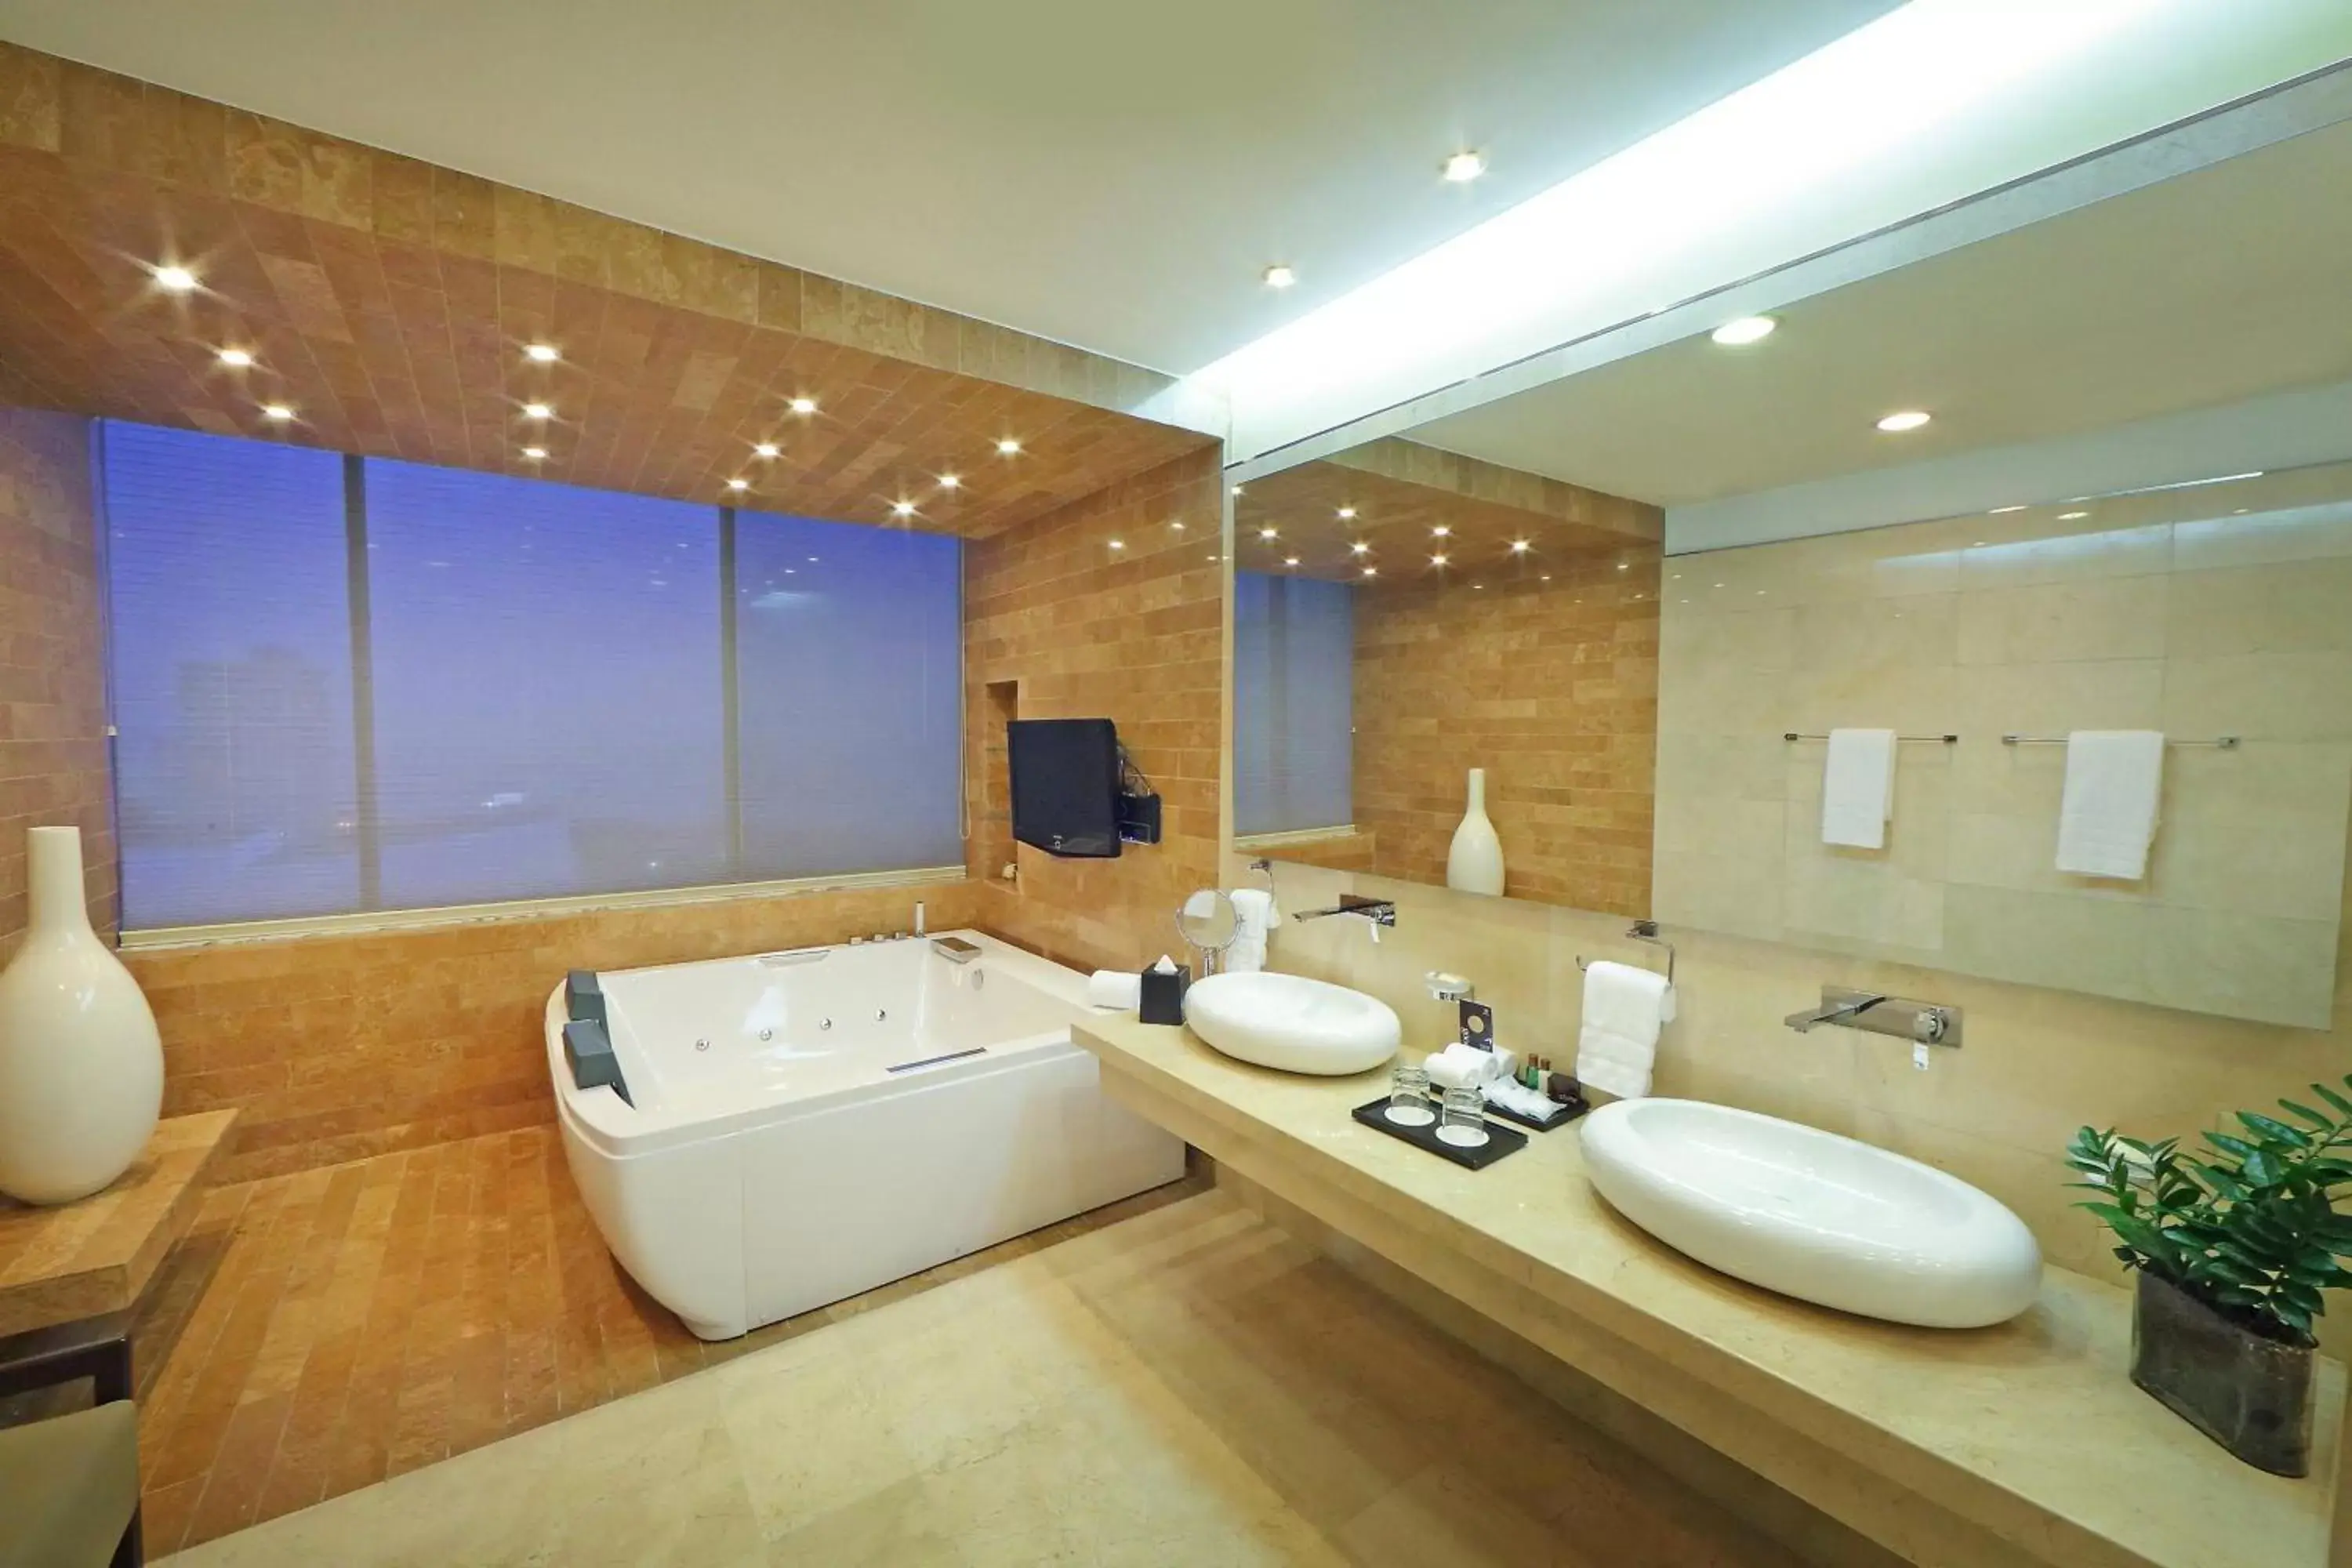 Bathroom in Sheraton Grand Panama